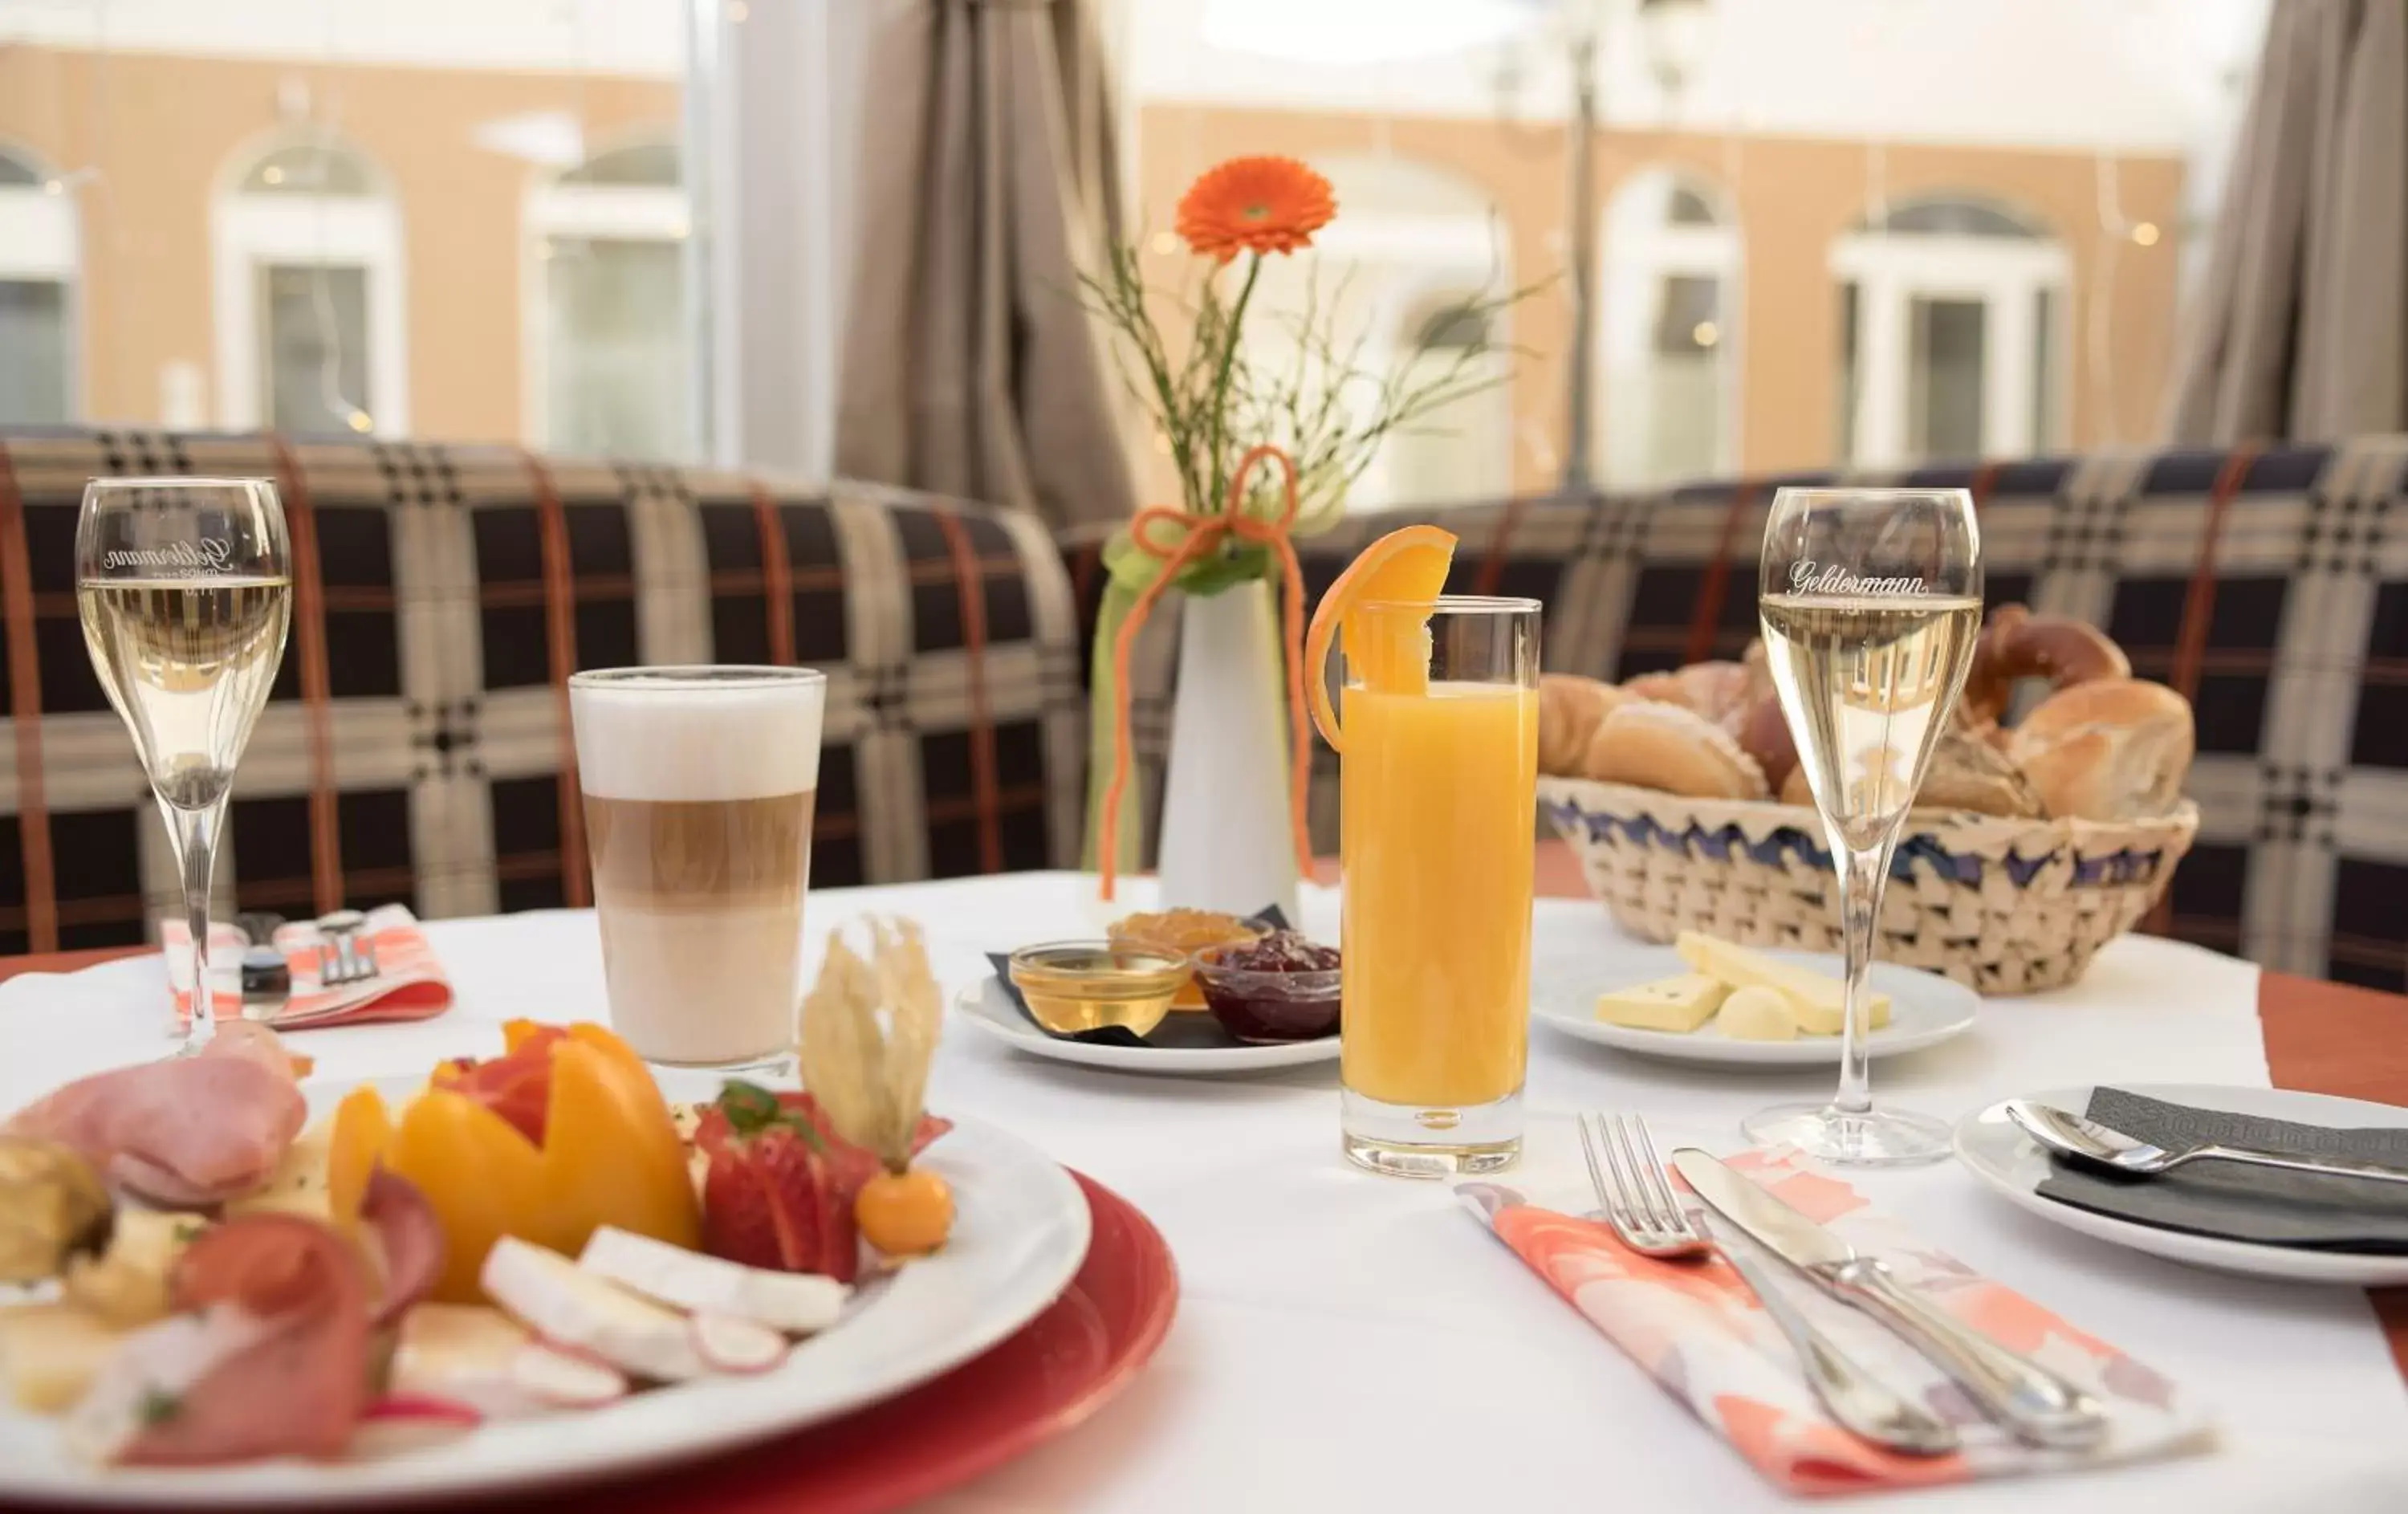 Buffet breakfast in Luitpoldpark-Hotel